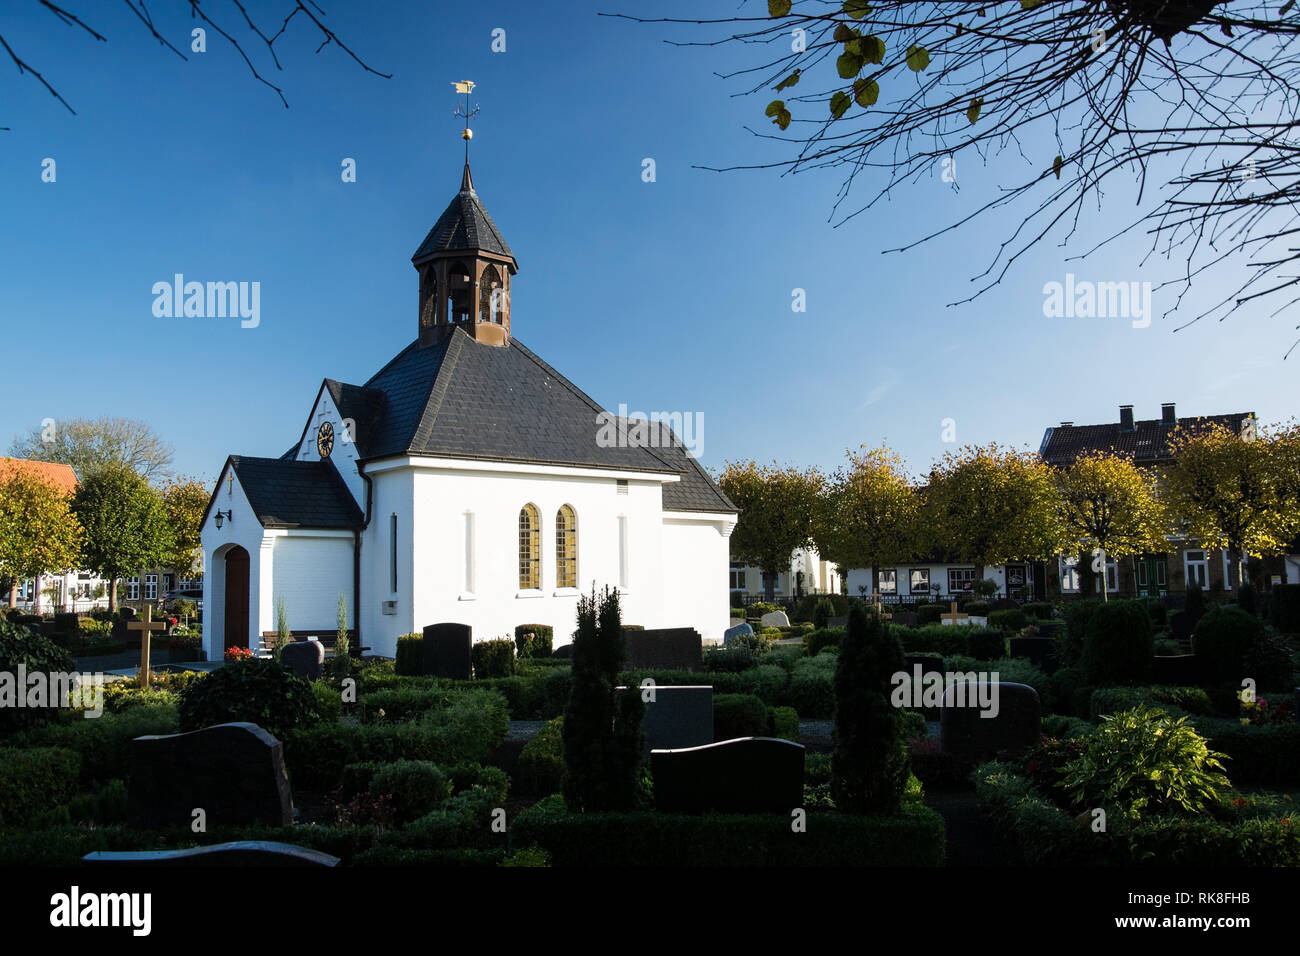 Il cimitero e la sua cappella è il centro della Holm è un quartiere di pescatori in Sleswick, Schleswig-Holstein, Germania. Foto Stock